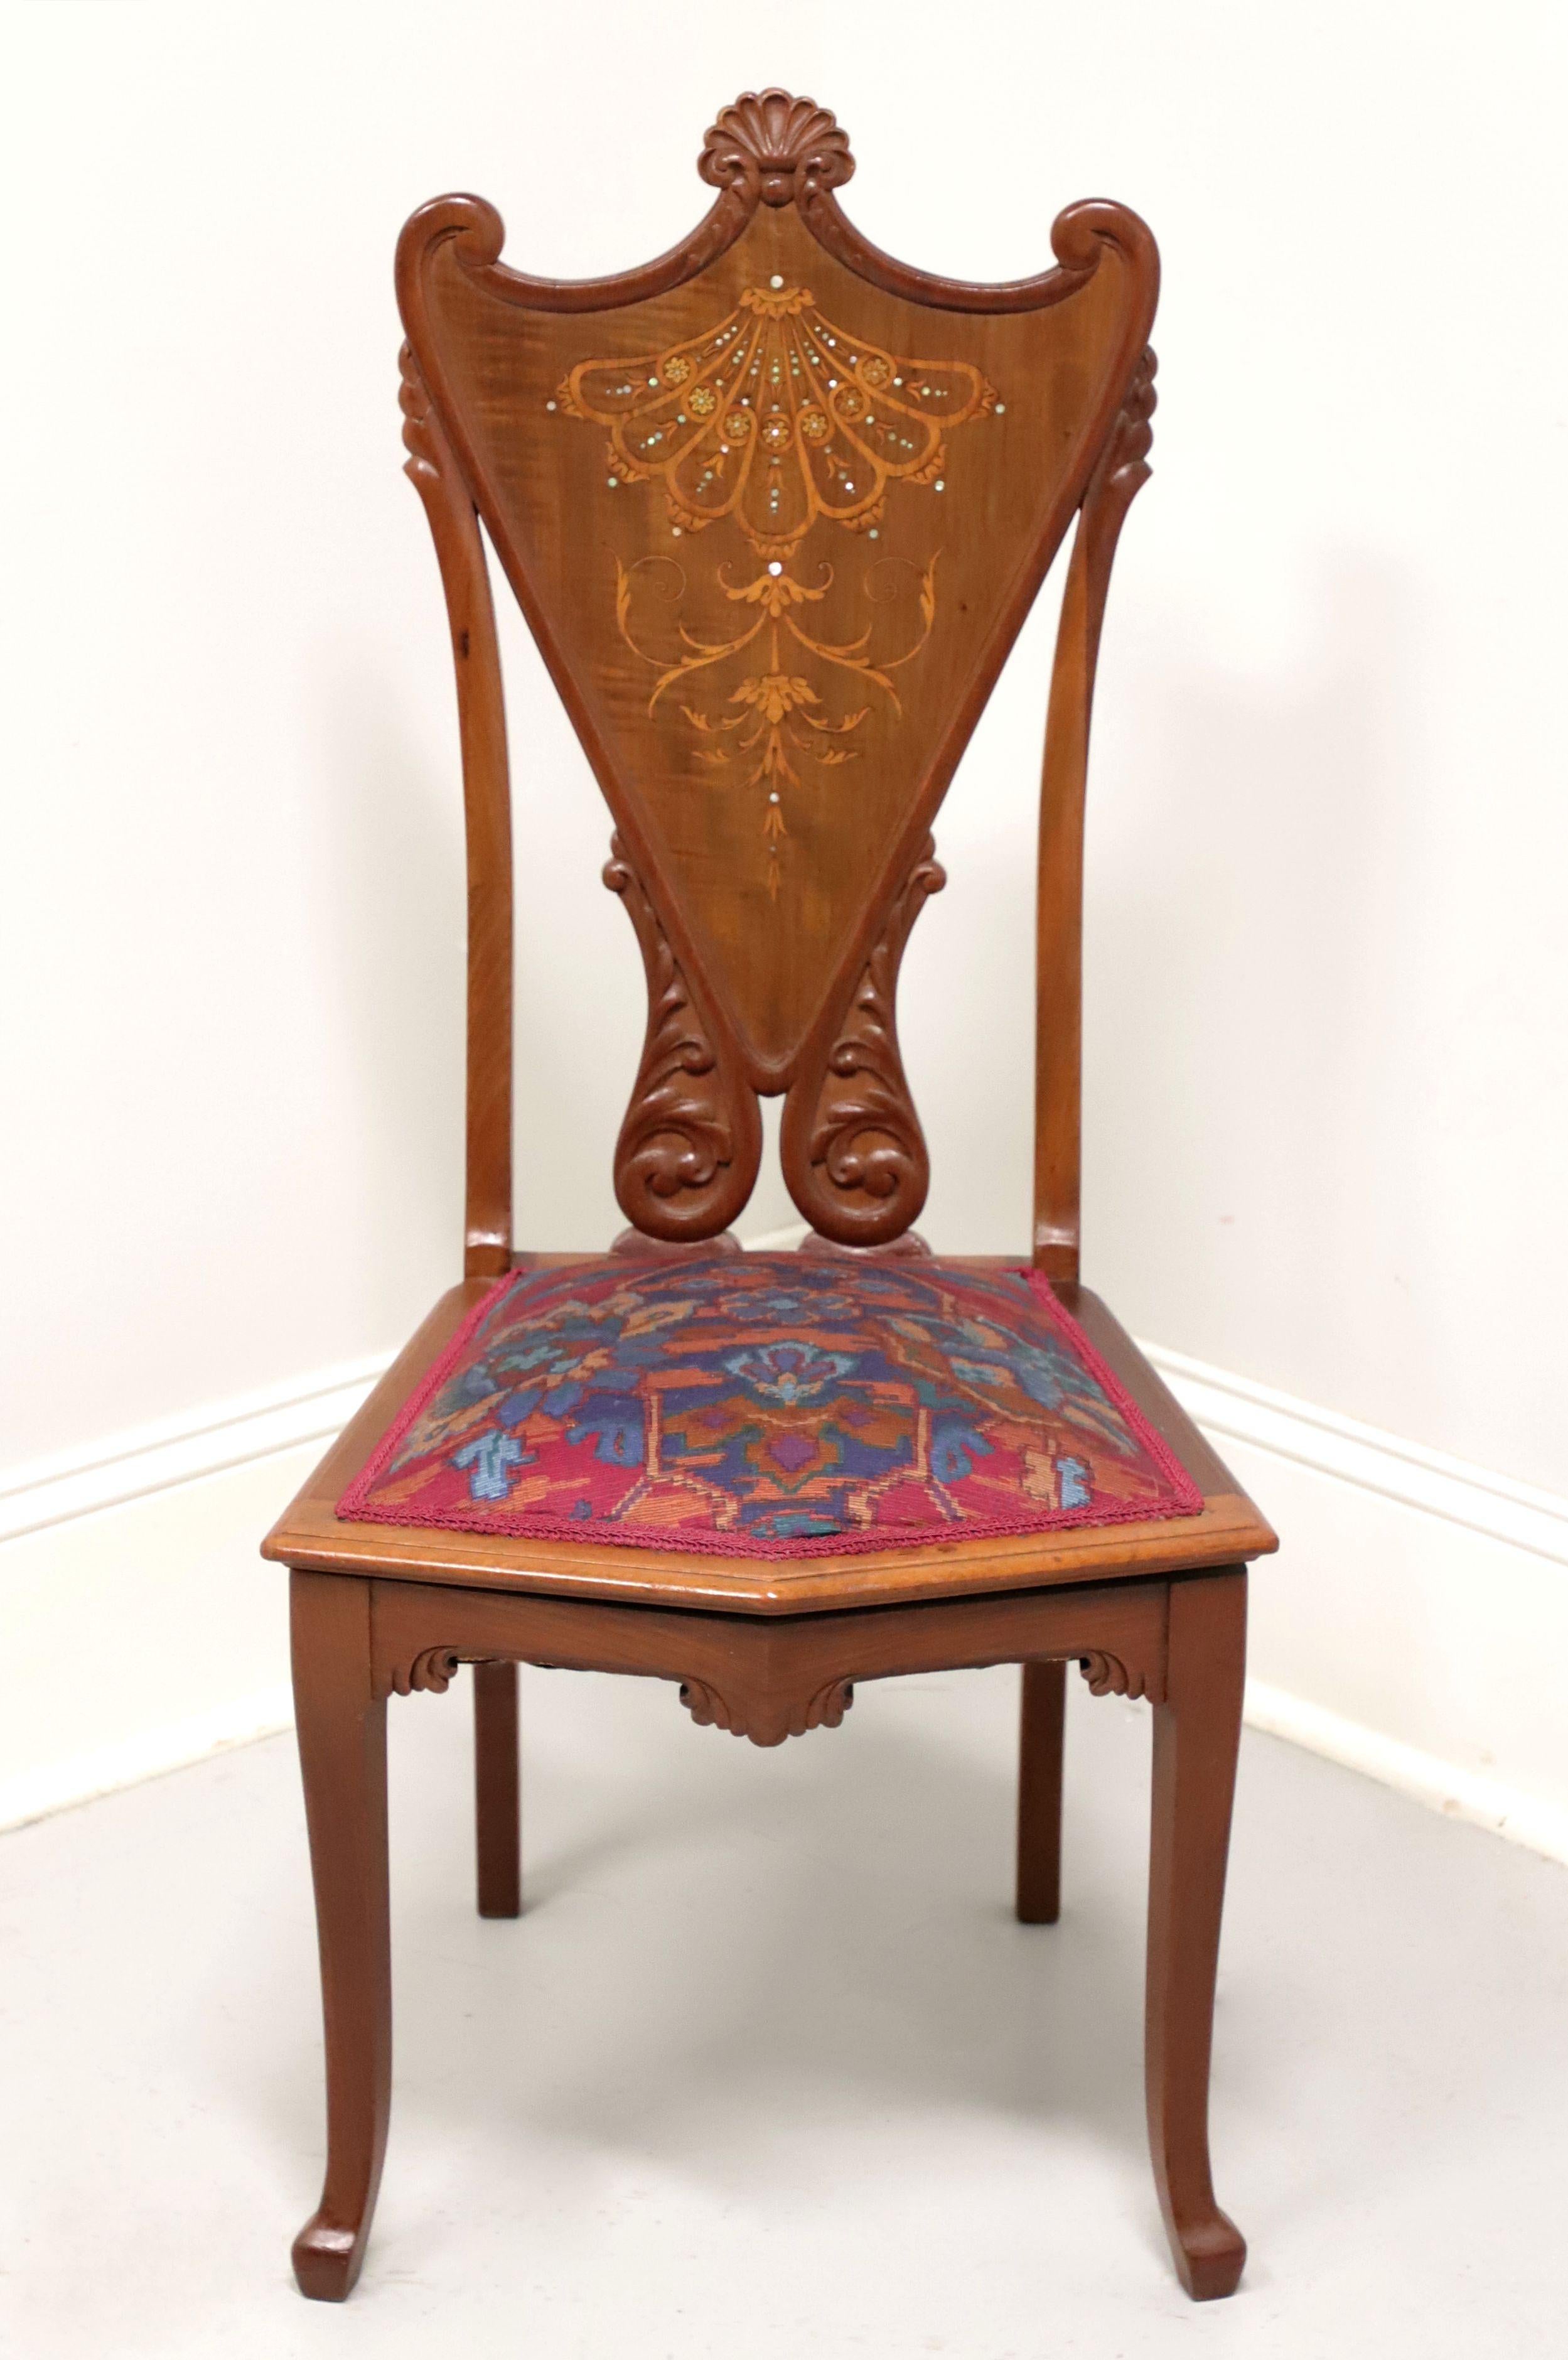 Ein antiker Beistellstuhl im viktorianischen Stil, ohne Markenzeichen. Handgeschnitzt aus Nussbaum mit Perlmuttintarsien, dekorativ geschnitzter Schildrücken, gepolsterter Sitz mit mehrfarbigem Kreuzstichstoff, geschnitzte Schürze, leicht